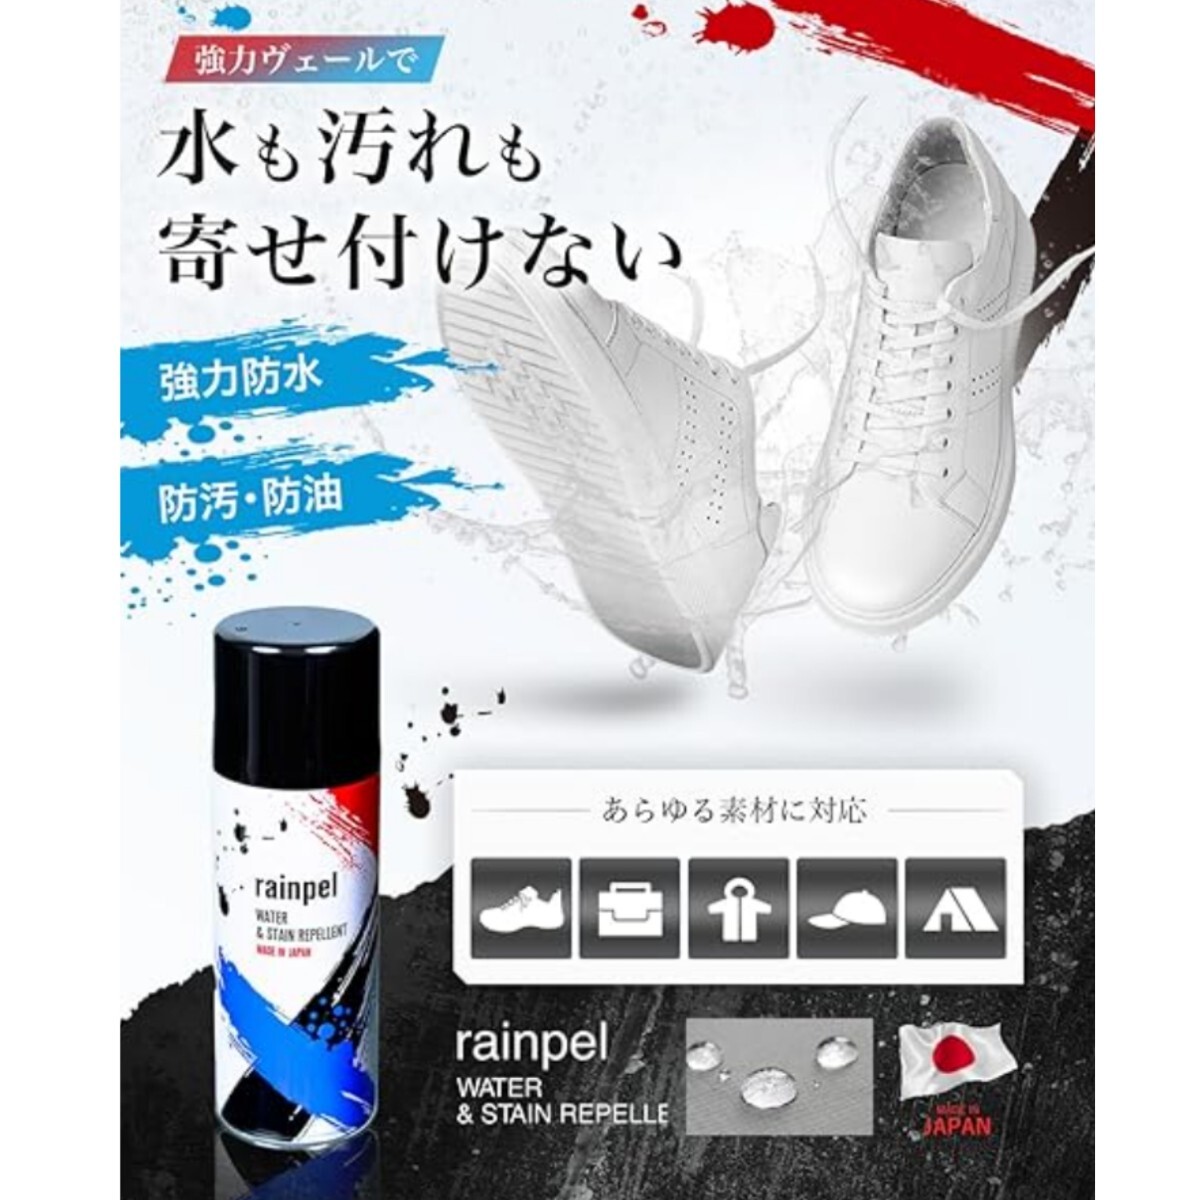  водонепроницаемый спрей большая вместимость 420ml мощный водонепроницаемый MADE IN JAPAN вода . загрязнения ... установка нет мощный водоотталкивающий простой водонепроницаемый новый товар нераспечатанный товар обувь портфель зонт 